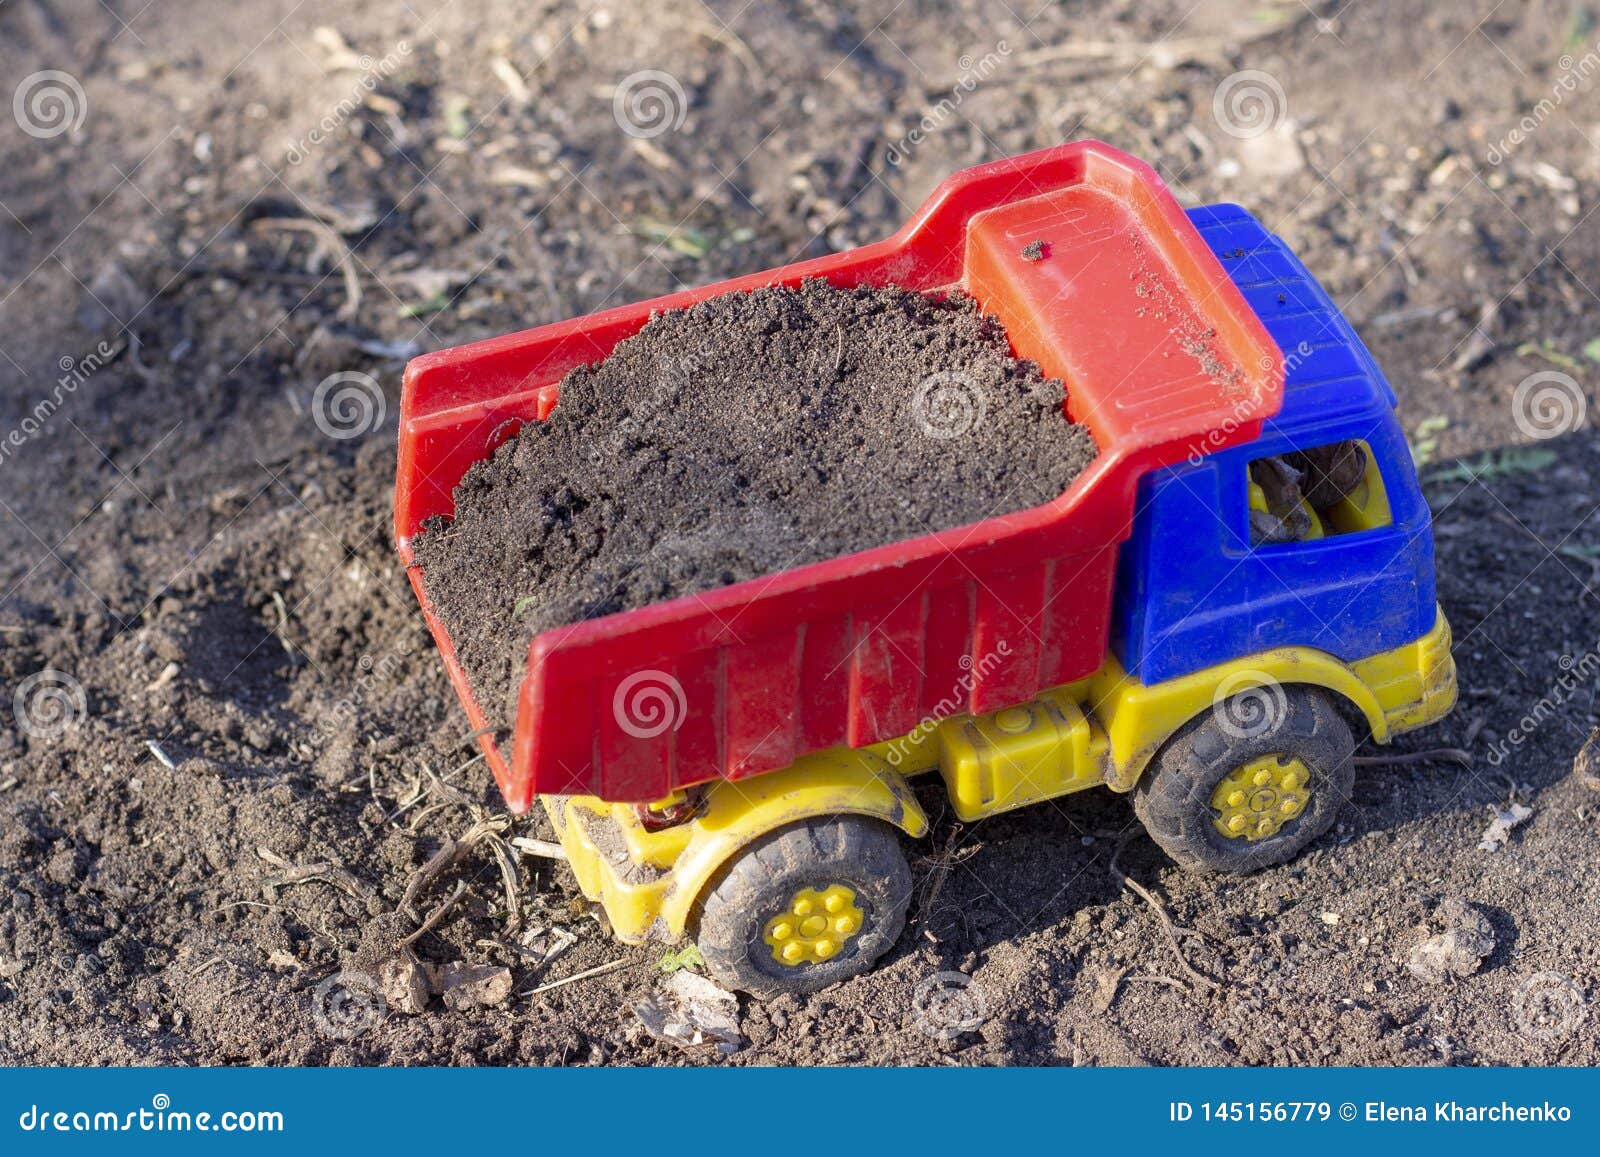 Caminhão basculante de caminhão de brinquedo em um fundo azul